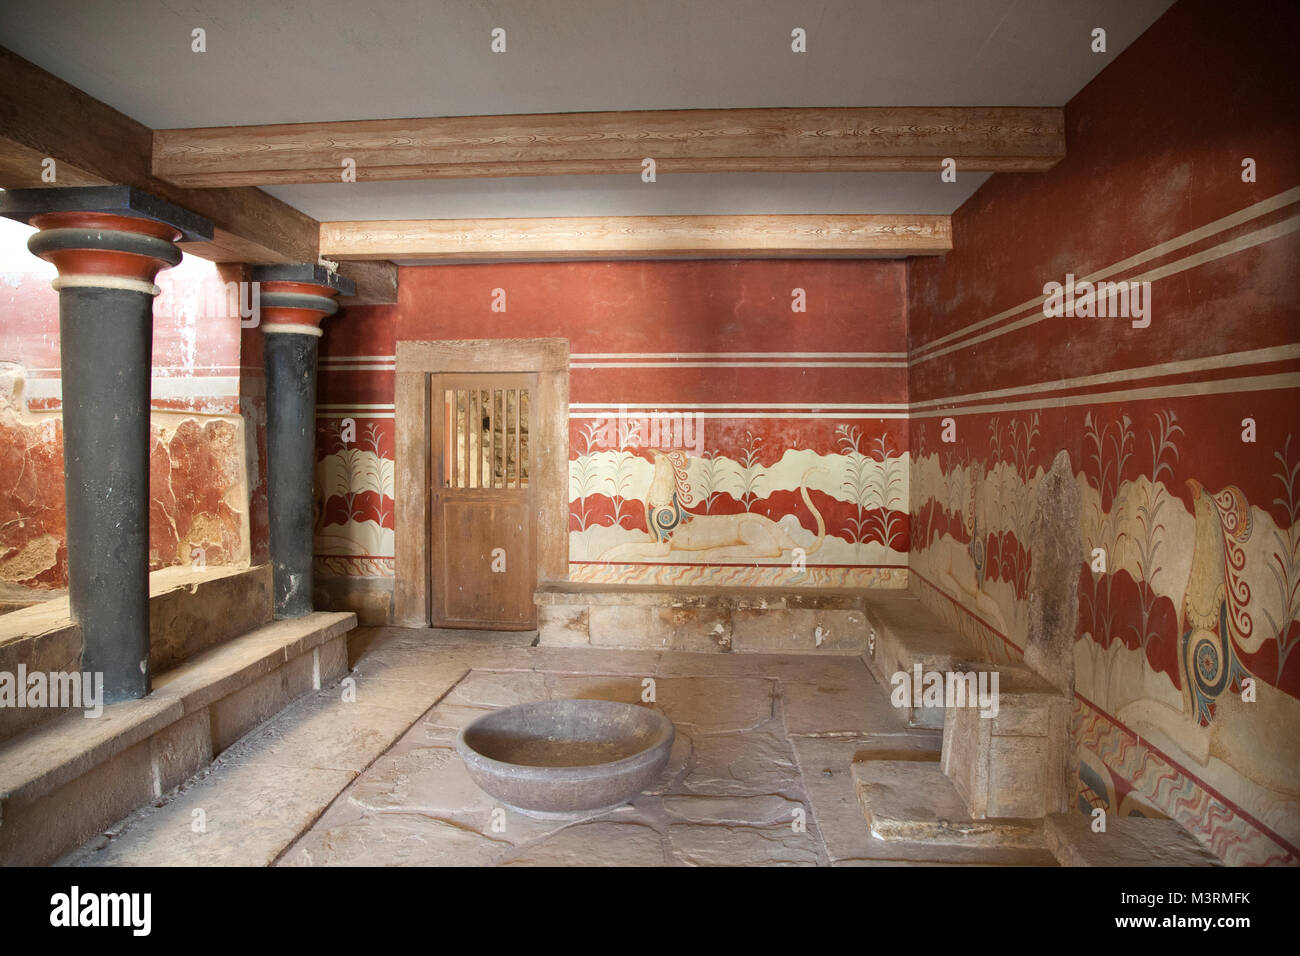 Salle du trône, palais de Knossos site archéologique, l'île de Crète, Grèce, Europe Banque D'Images